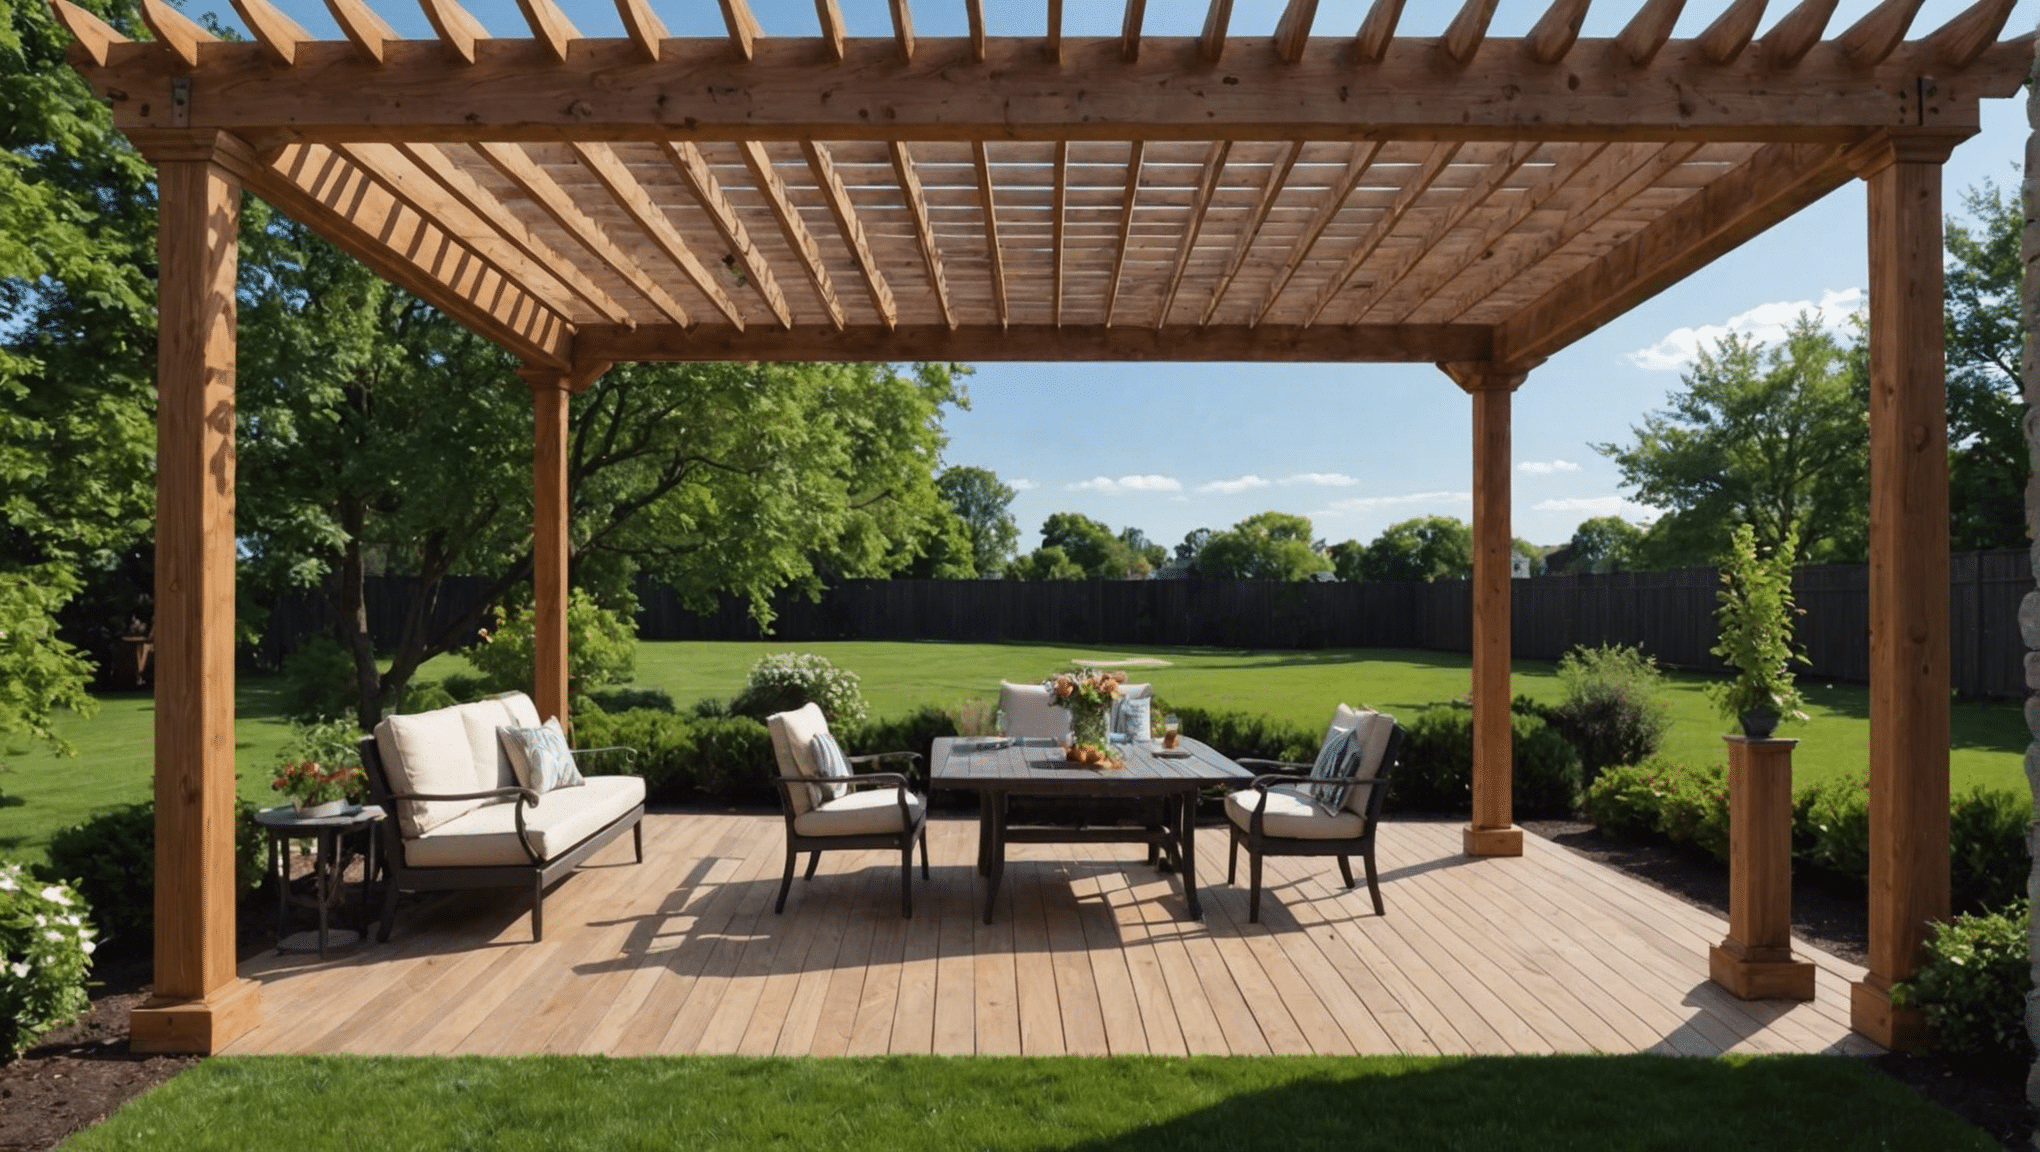 découvrez les avantages d'opter pour une pergola en bois pour votre espace extérieur. esthétique, naturelle et durable, la pergola en bois apporte charme et confort à votre jardin ou terrasse.